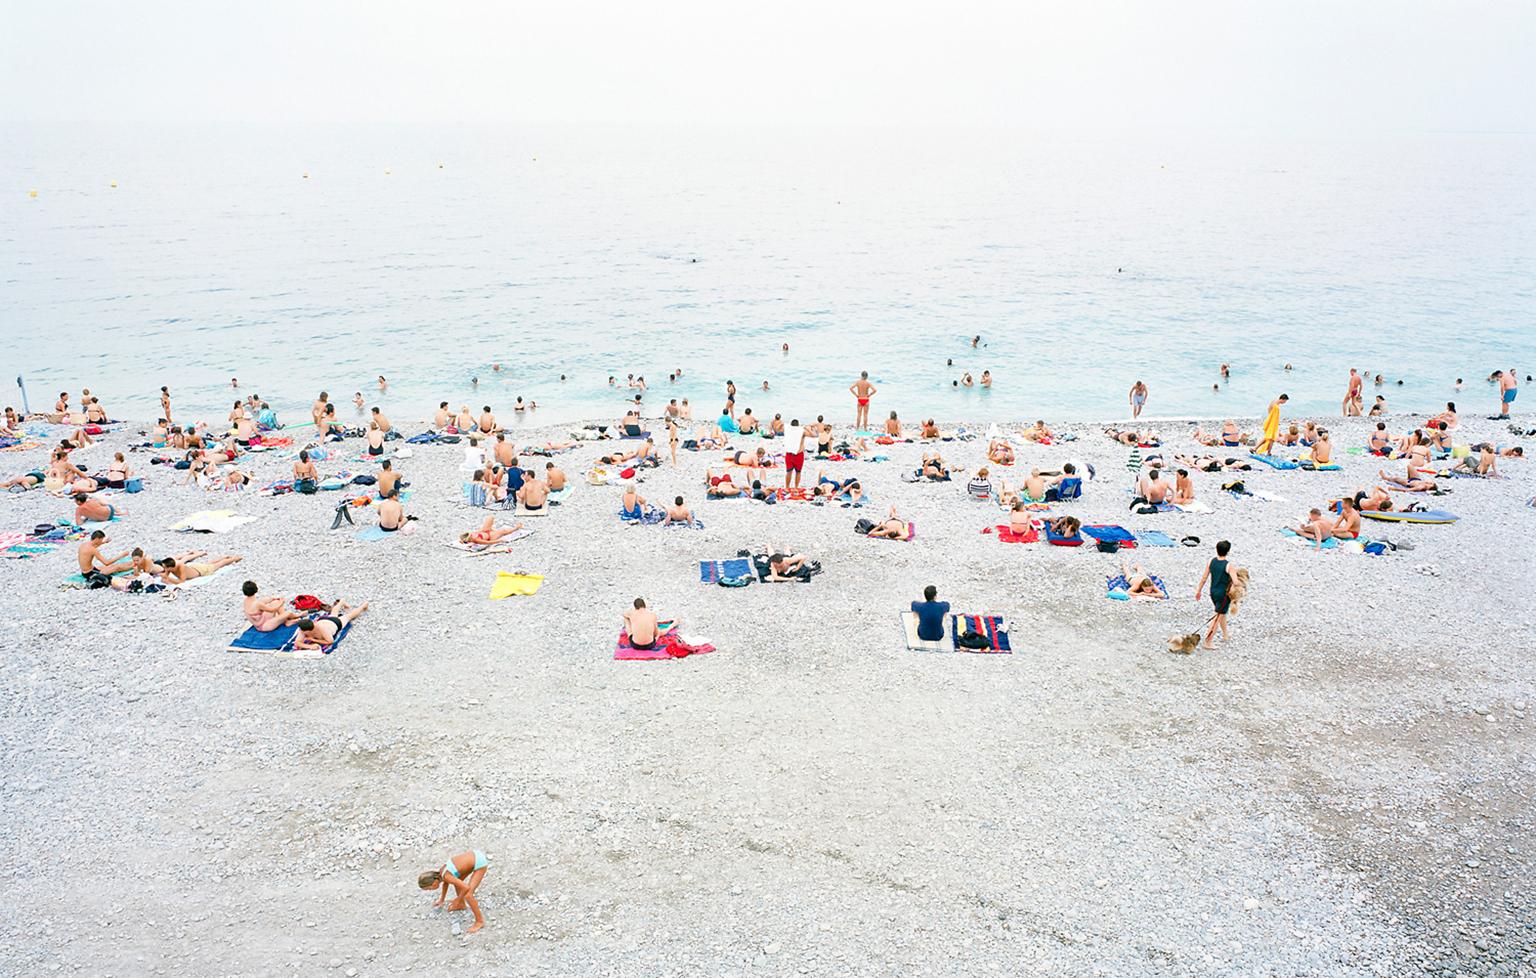 Color Photograph Frank Schott - Nizza - photographie grand format d'une scne de plage d't dans le sud de la France